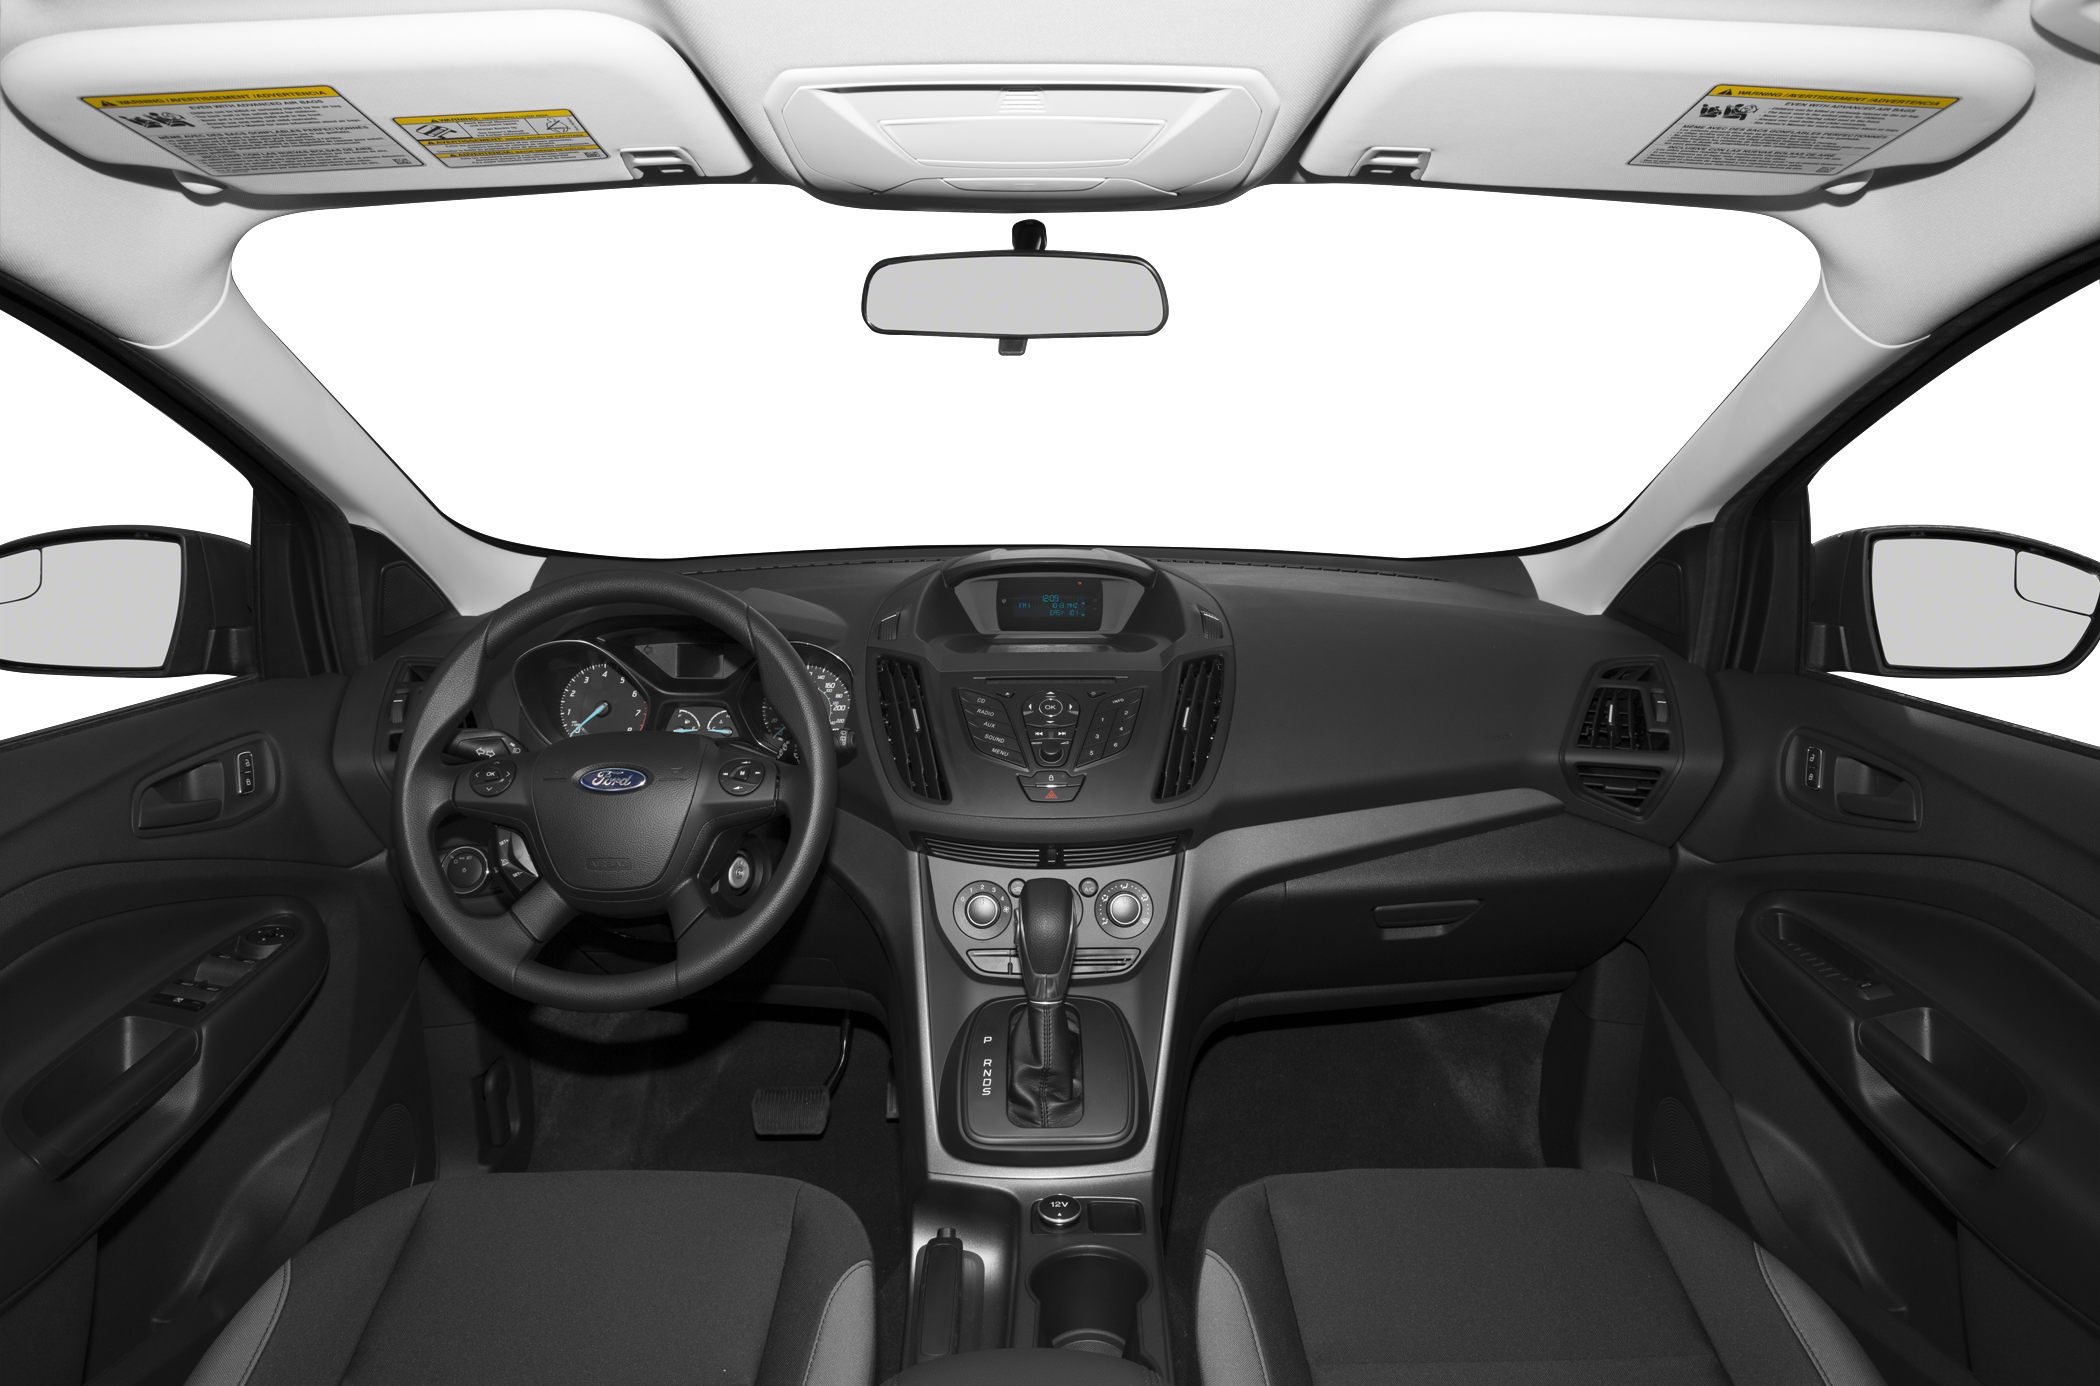 2014 Ford Escape Interior Dashboard View